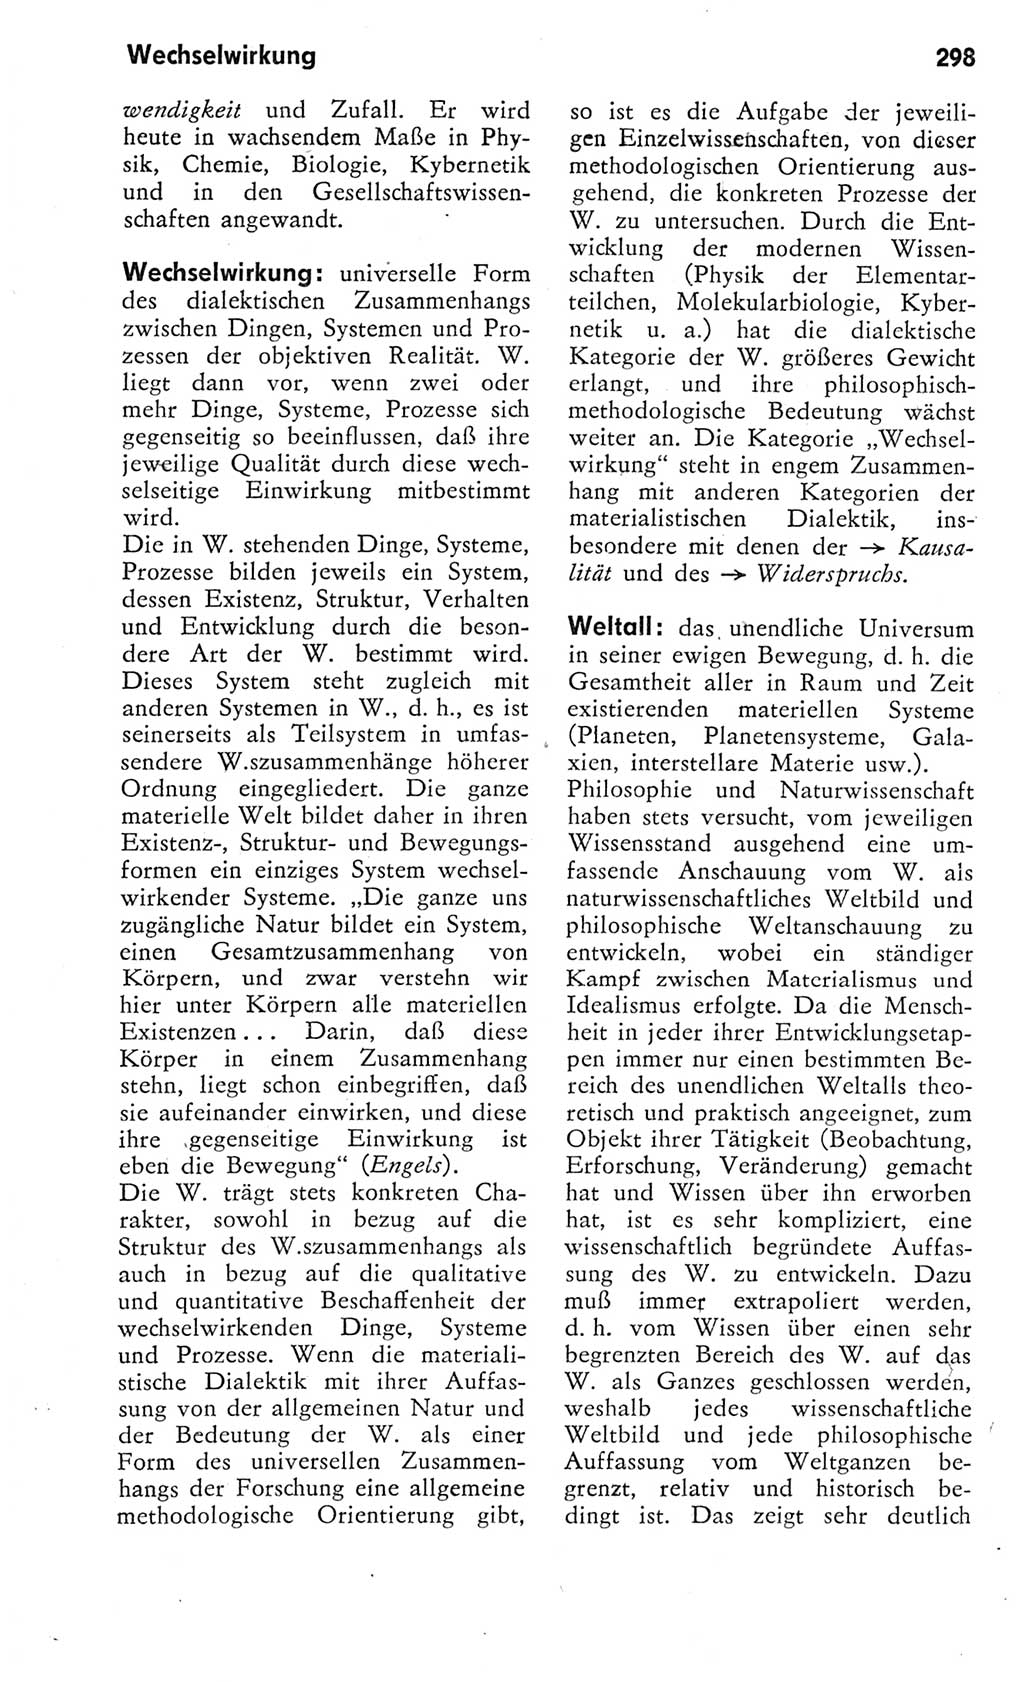 Kleines Wörterbuch der marxistisch-leninistischen Philosophie [Deutsche Demokratische Republik (DDR)] 1975, Seite 298 (Kl. Wb. ML Phil. DDR 1975, S. 298)